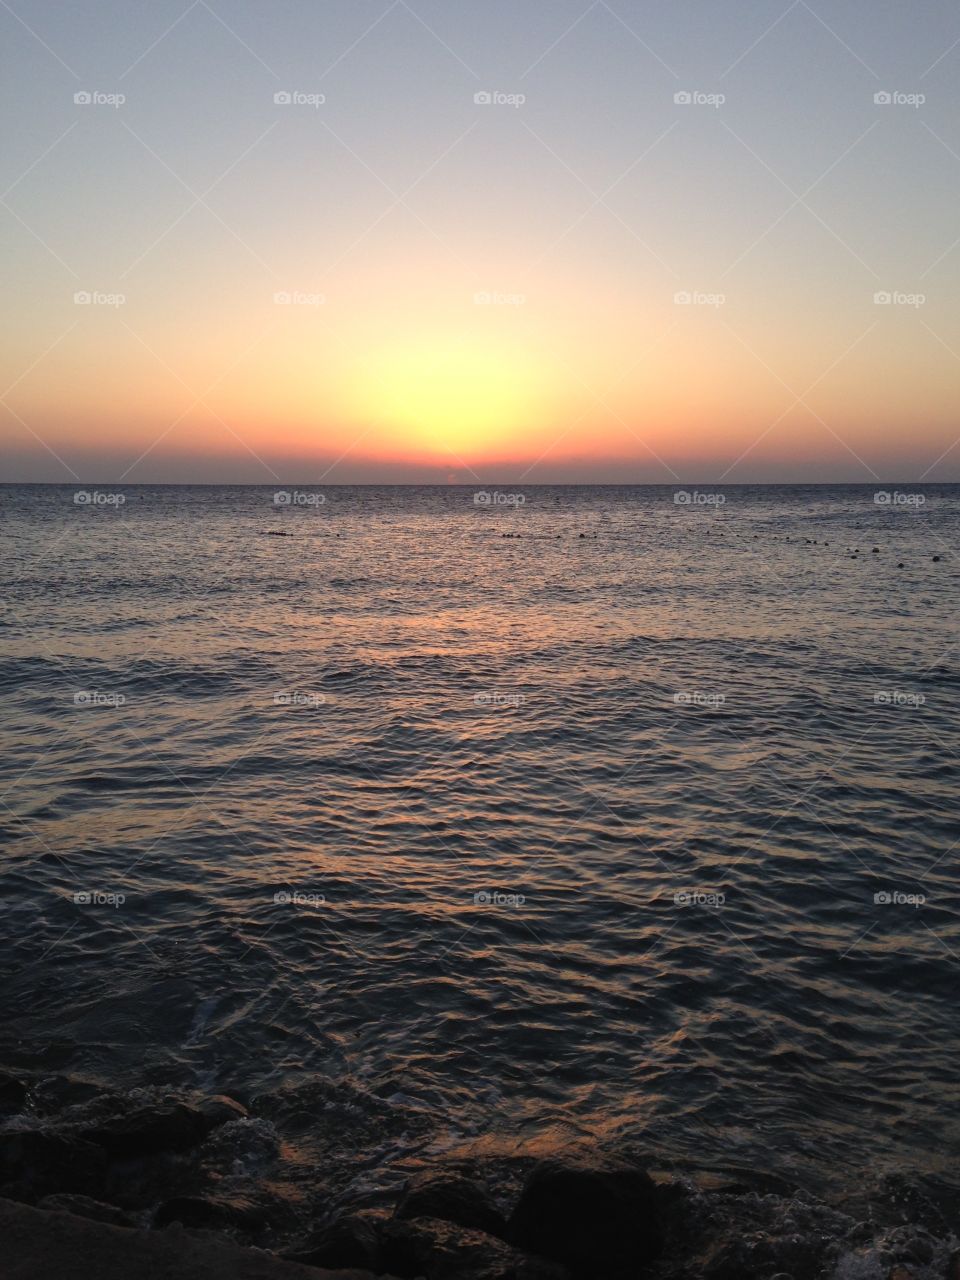 Sea sunrise 